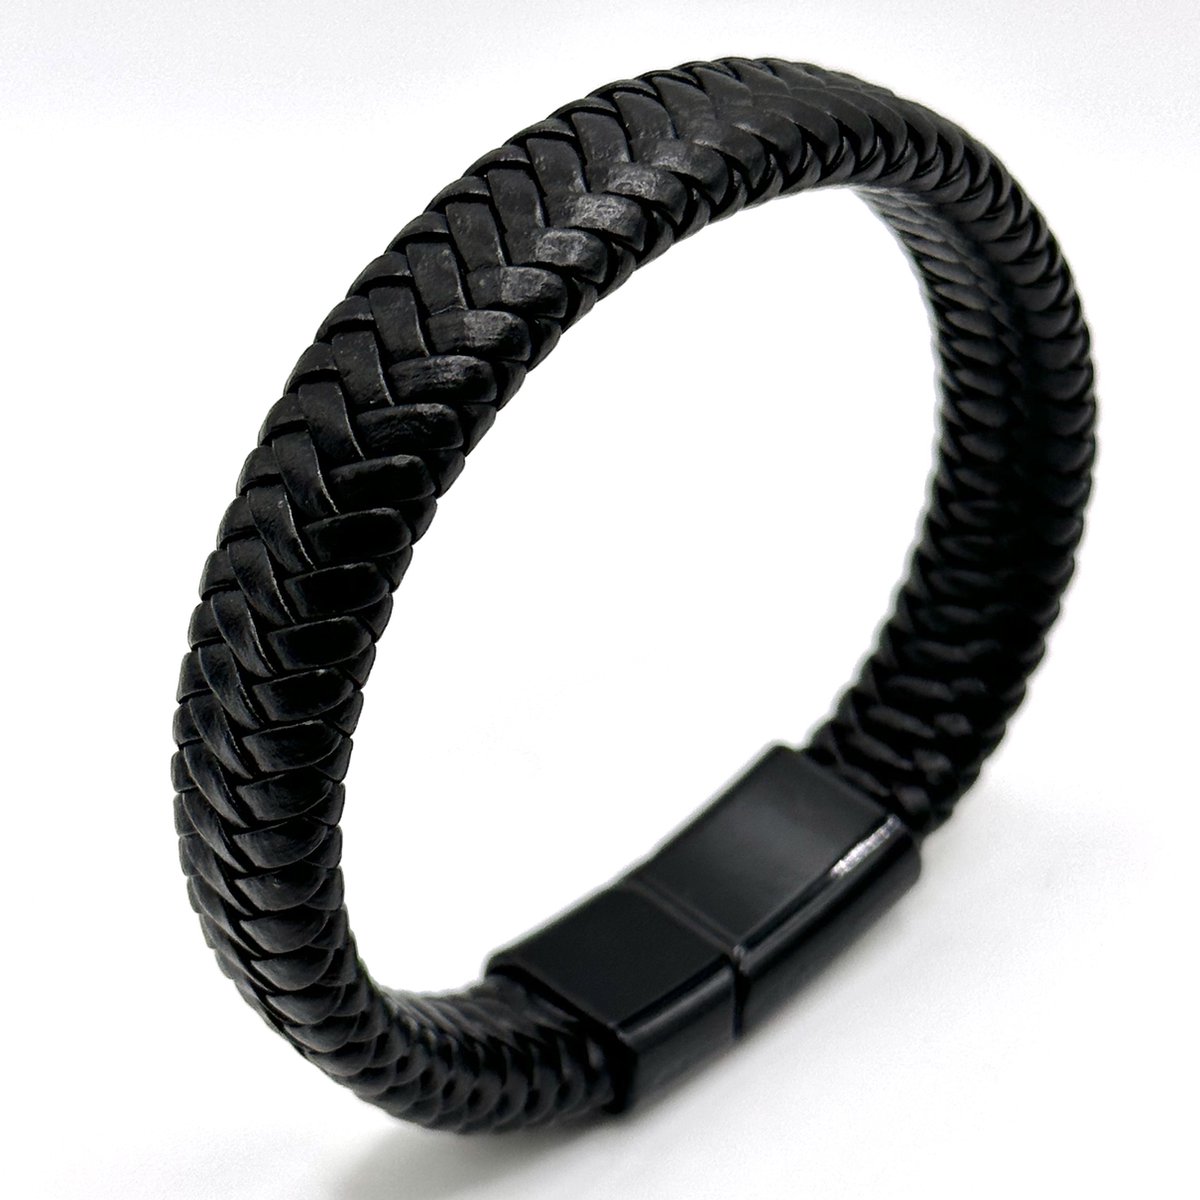 Zwart Lederen Gevlochten Wrap Armband - 18,5cm - Armband Leer Zwart - Gevlochten Armband - Voor Hem - Voor Man - Voor Haar - Voor Vrouw - Armband Cadeau